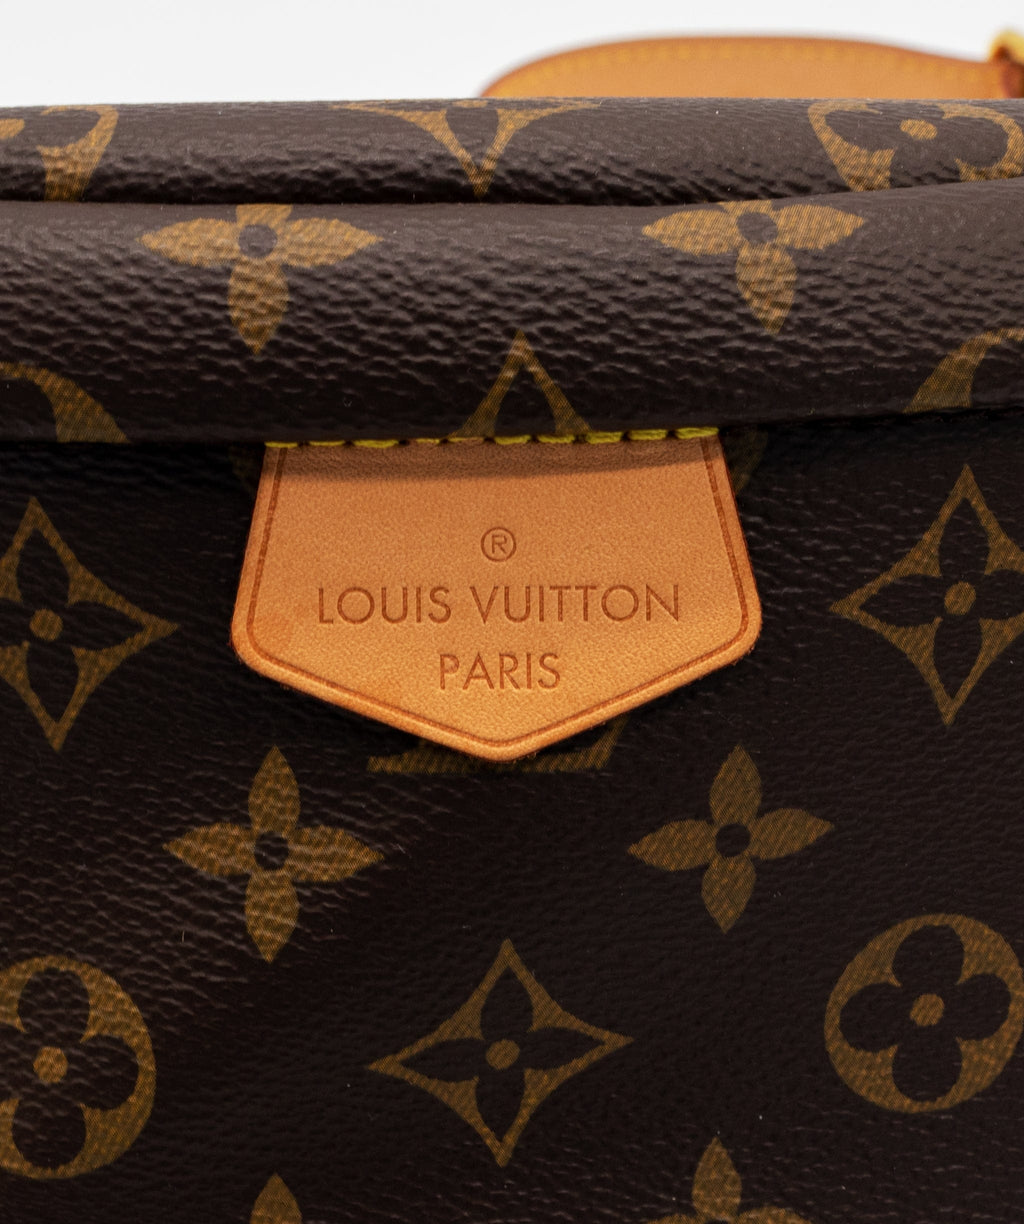 Louis Vuitton case study